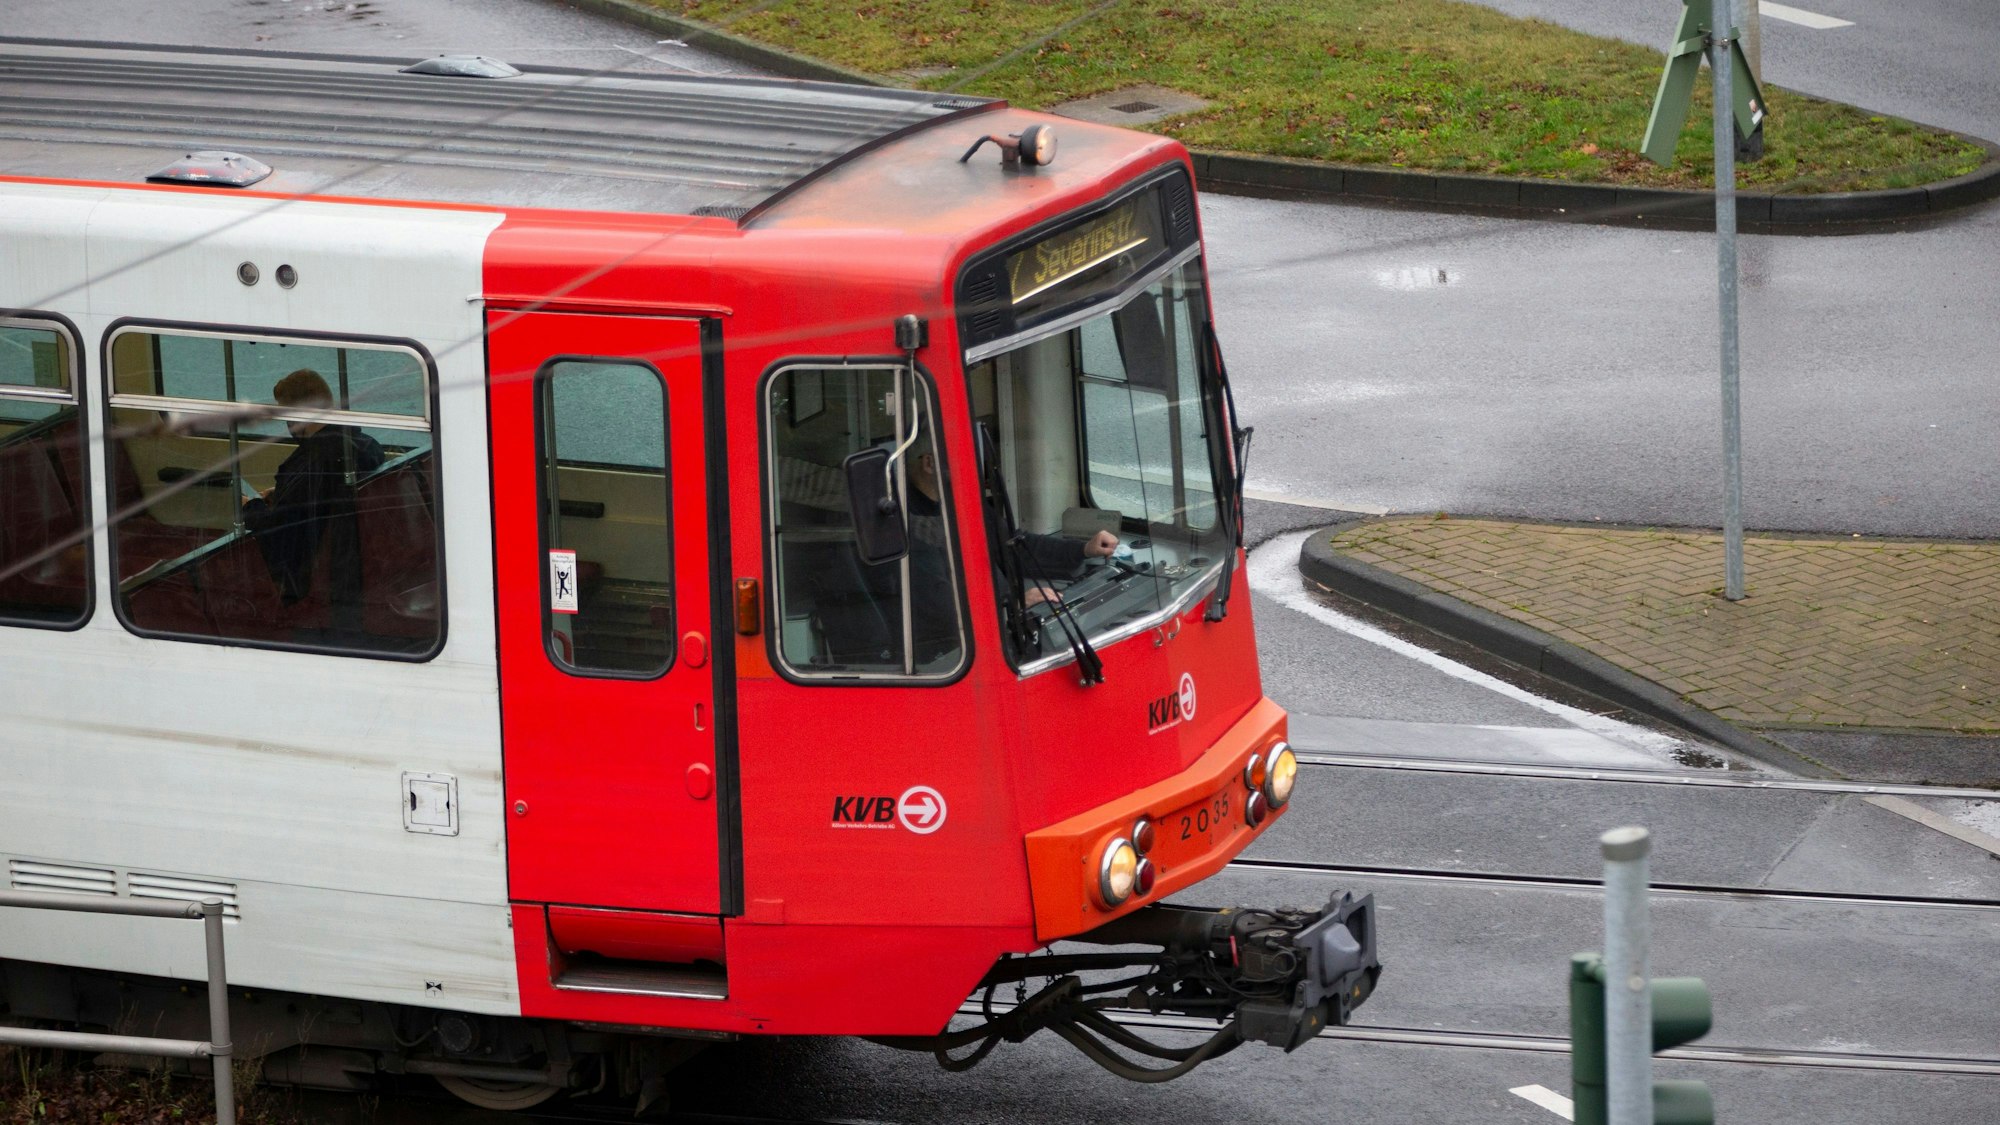 Eine Straßenbahn der Kölner Verkehrs-Betriebe fährt von links nach rechts durchs Bild.